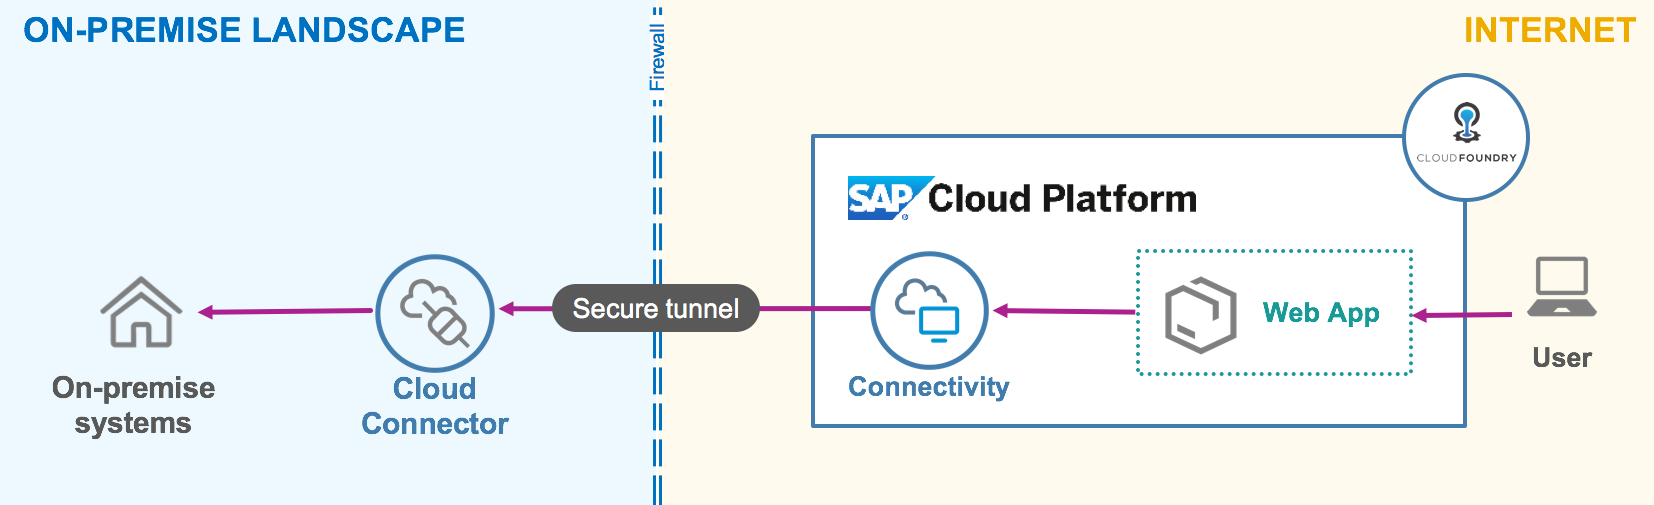 SAP Cloud Connector